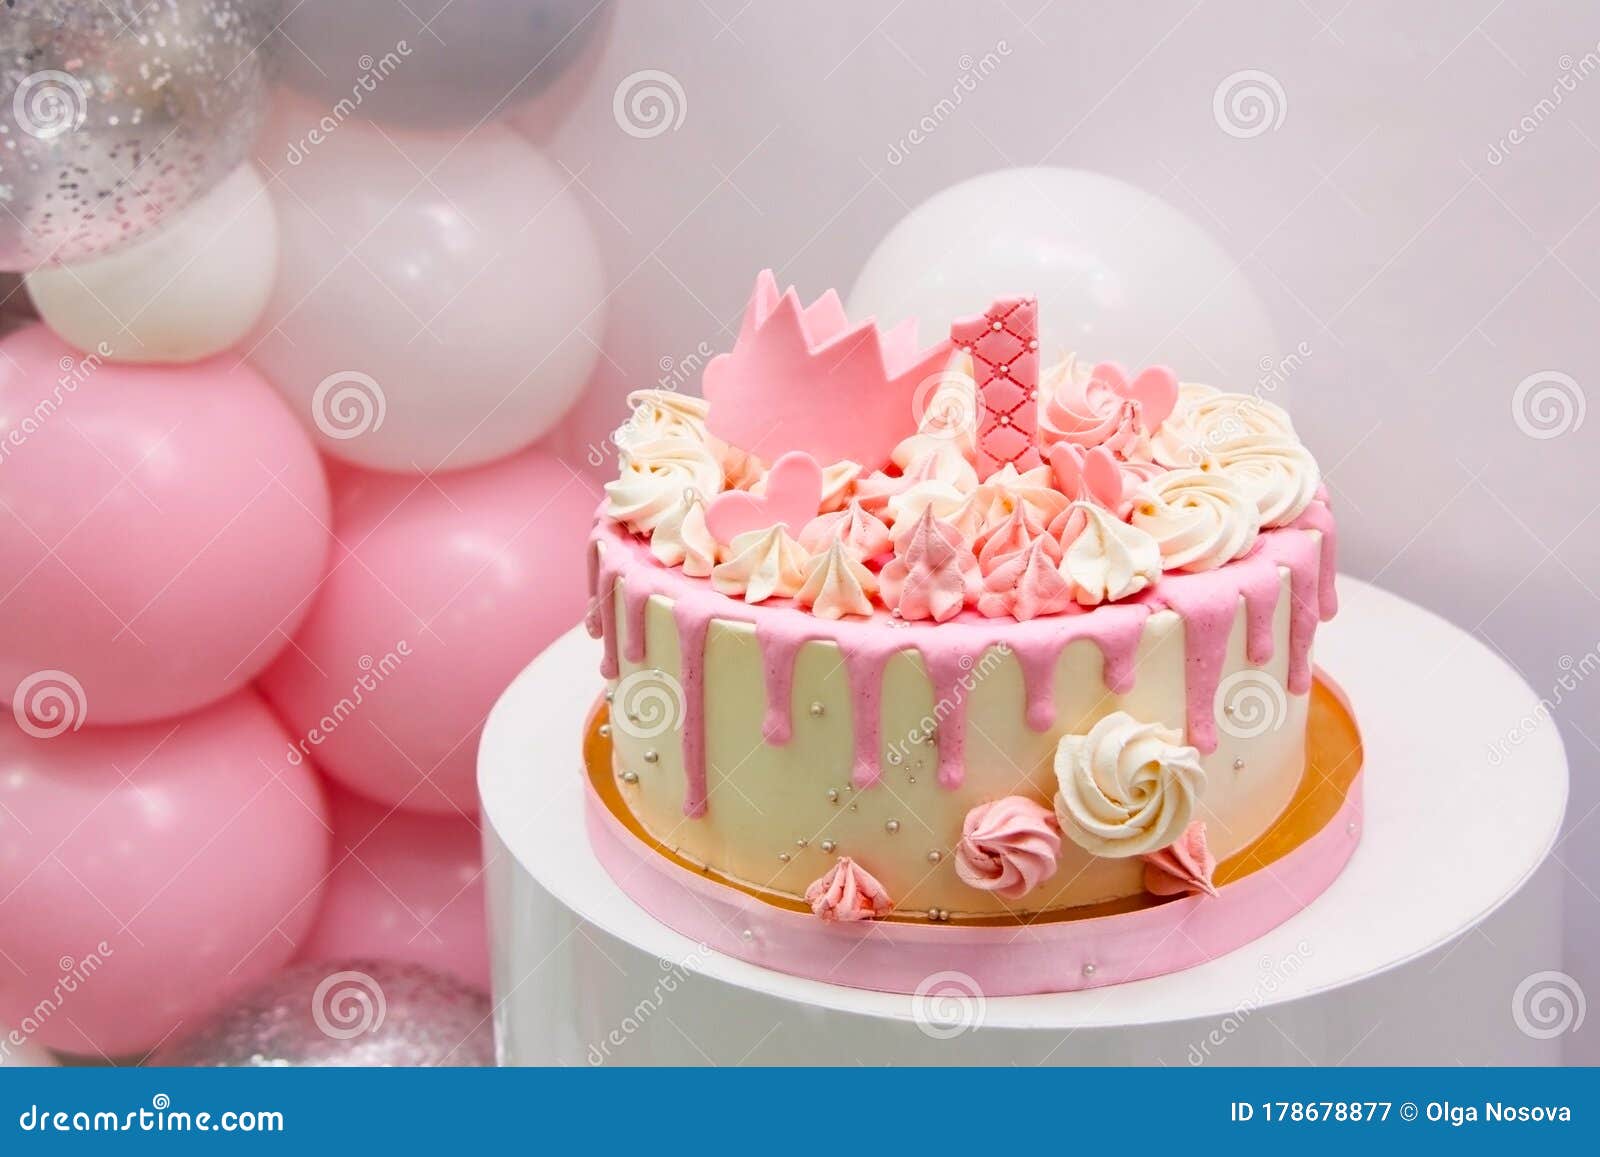 Delicado Pastel Rosa Con Corona De Princesa Dorada De Baudibles Y Número 1.  Fiesta De Primer Cumpleaños De Una Niña De Un Año Con Imagen de archivo -  Imagen de casero, torta: 178678877